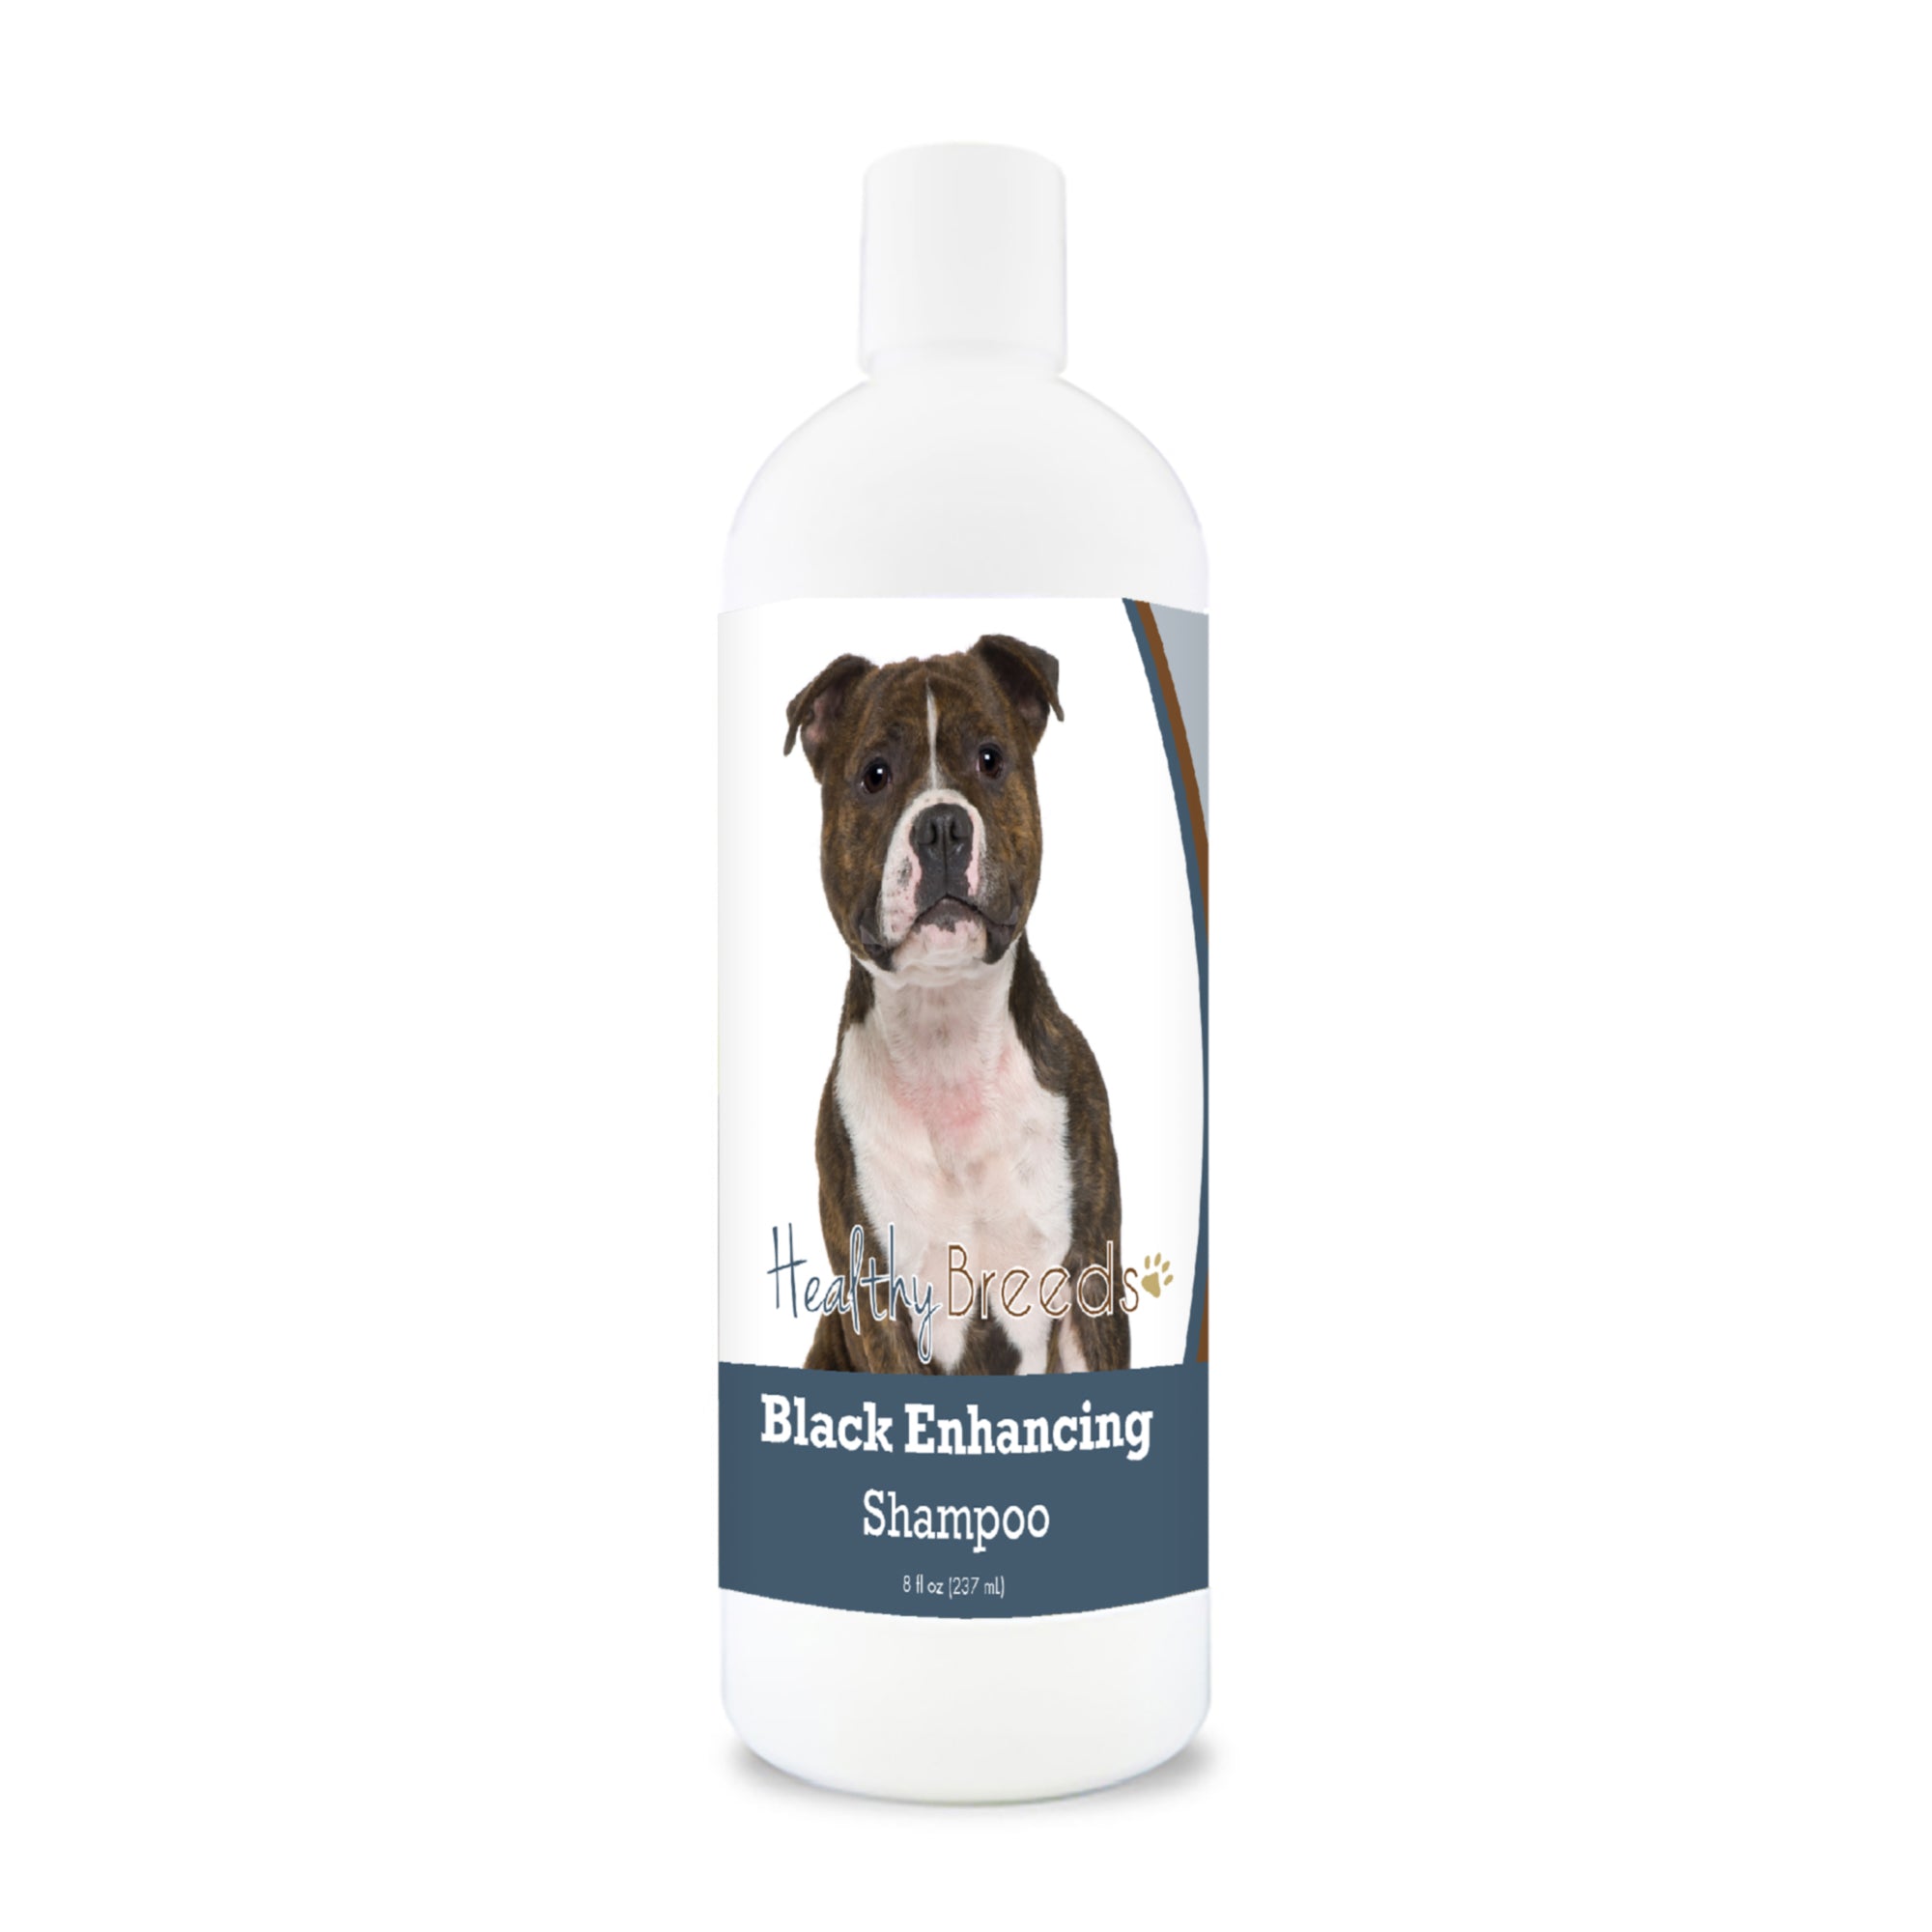 Staffordshire Bull Terrier Black Enhancing Shampoo 8 oz